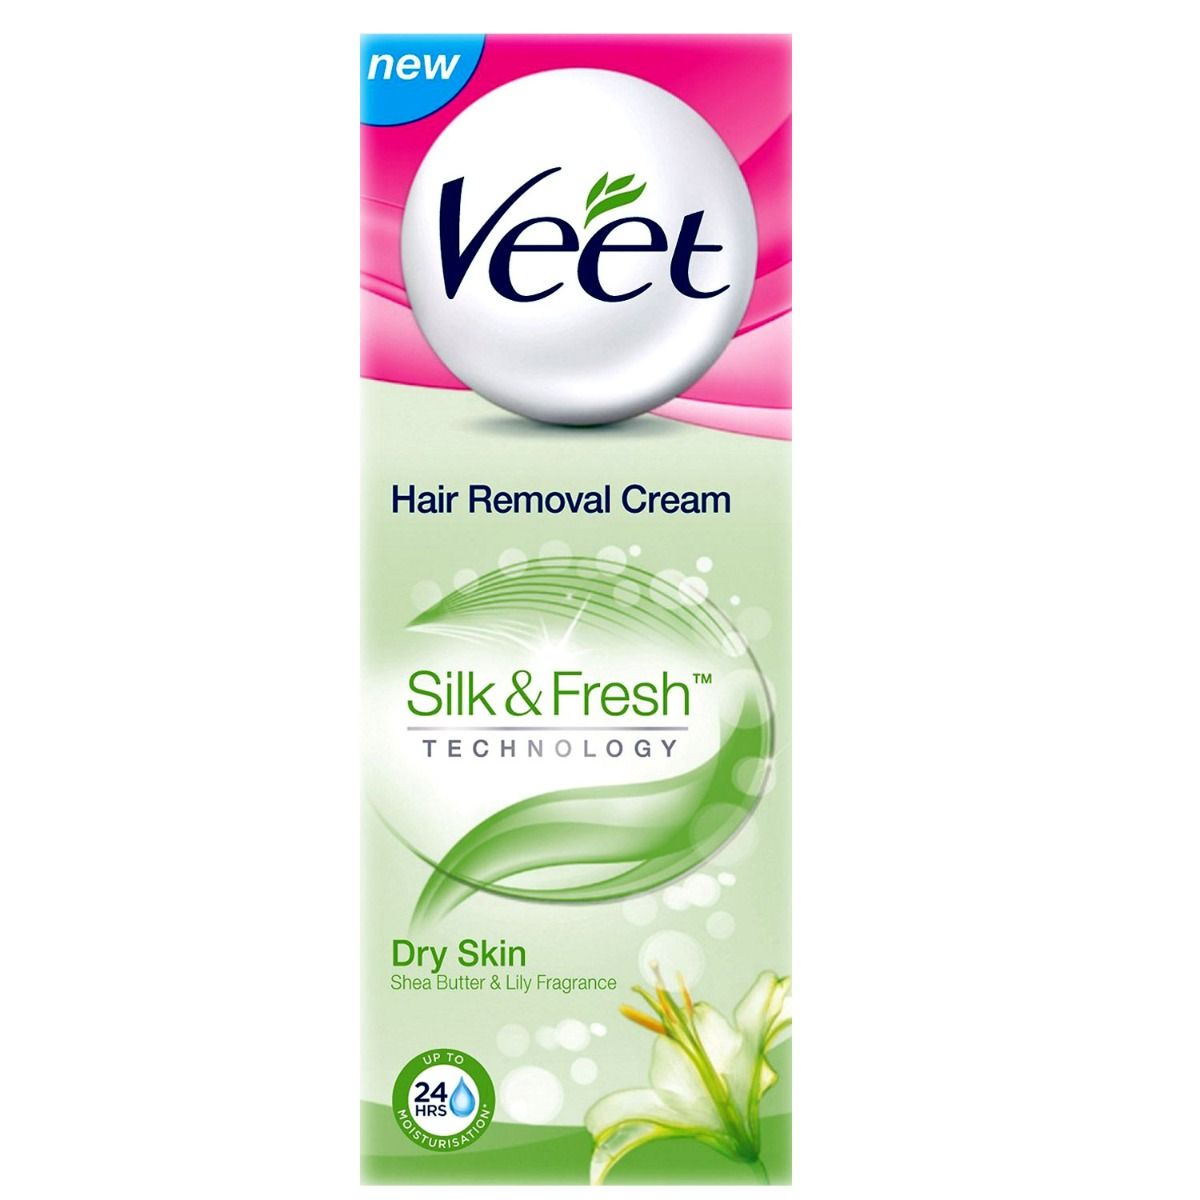 Veet Silk & Fresh Hair Removal Cream for Dry Skin, 25 gm, Pack of 1 